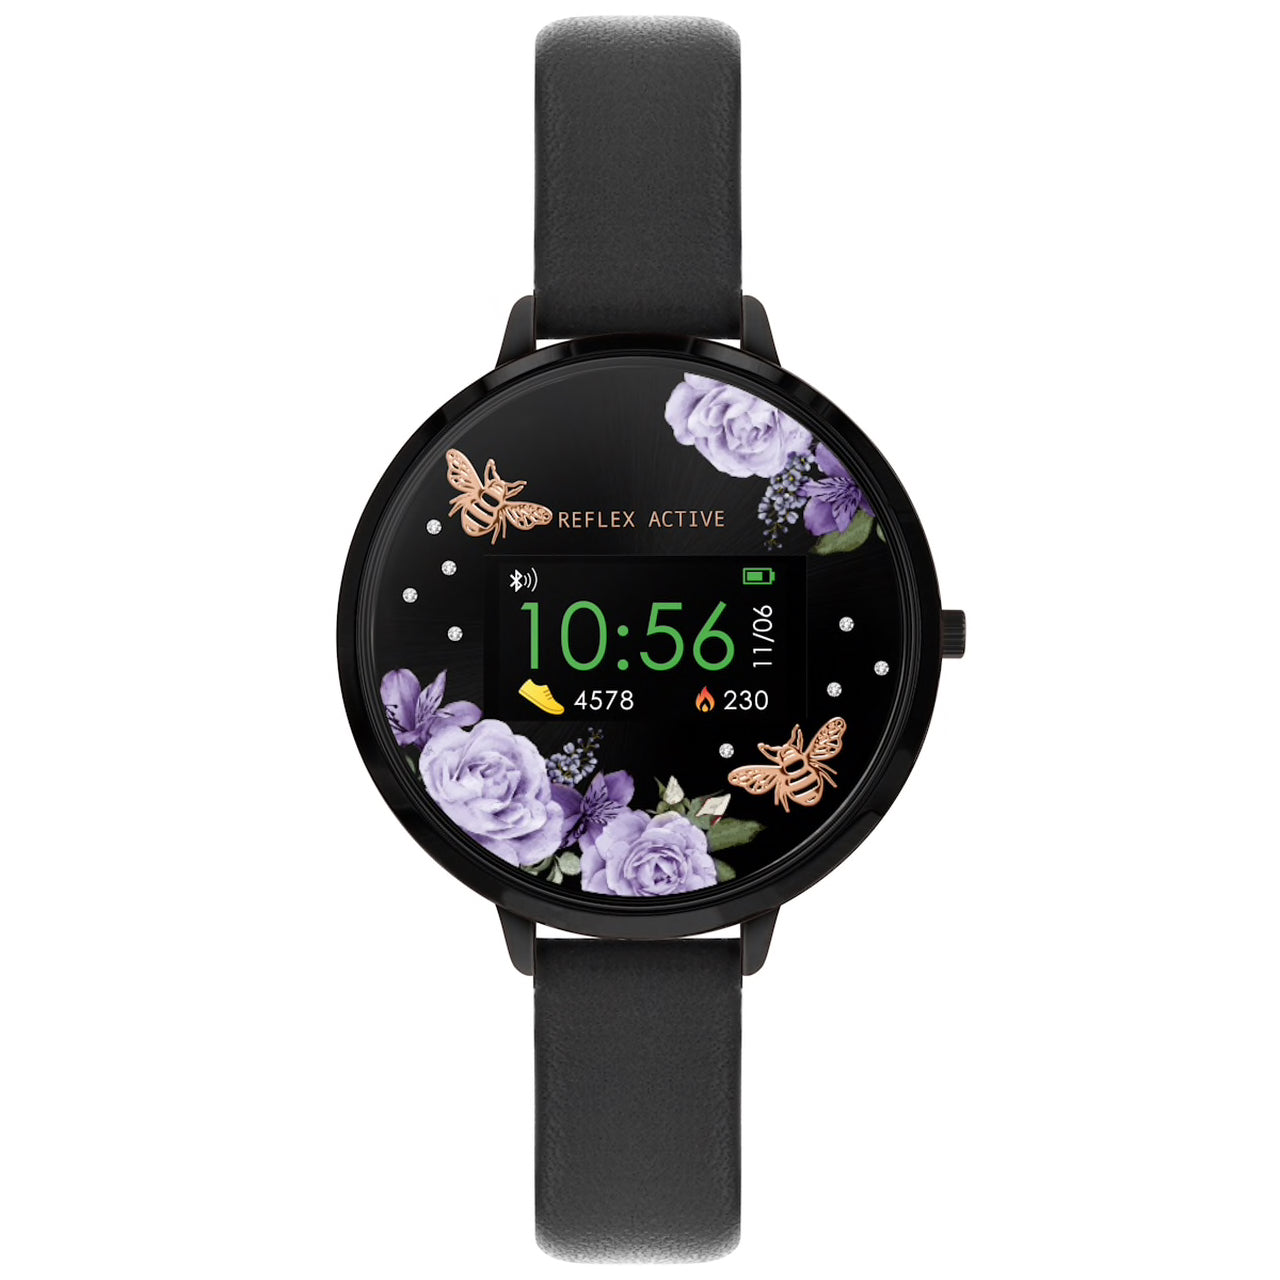 REFLEX ACTIVE Series 3 Black Midnight Garden Smart Watch